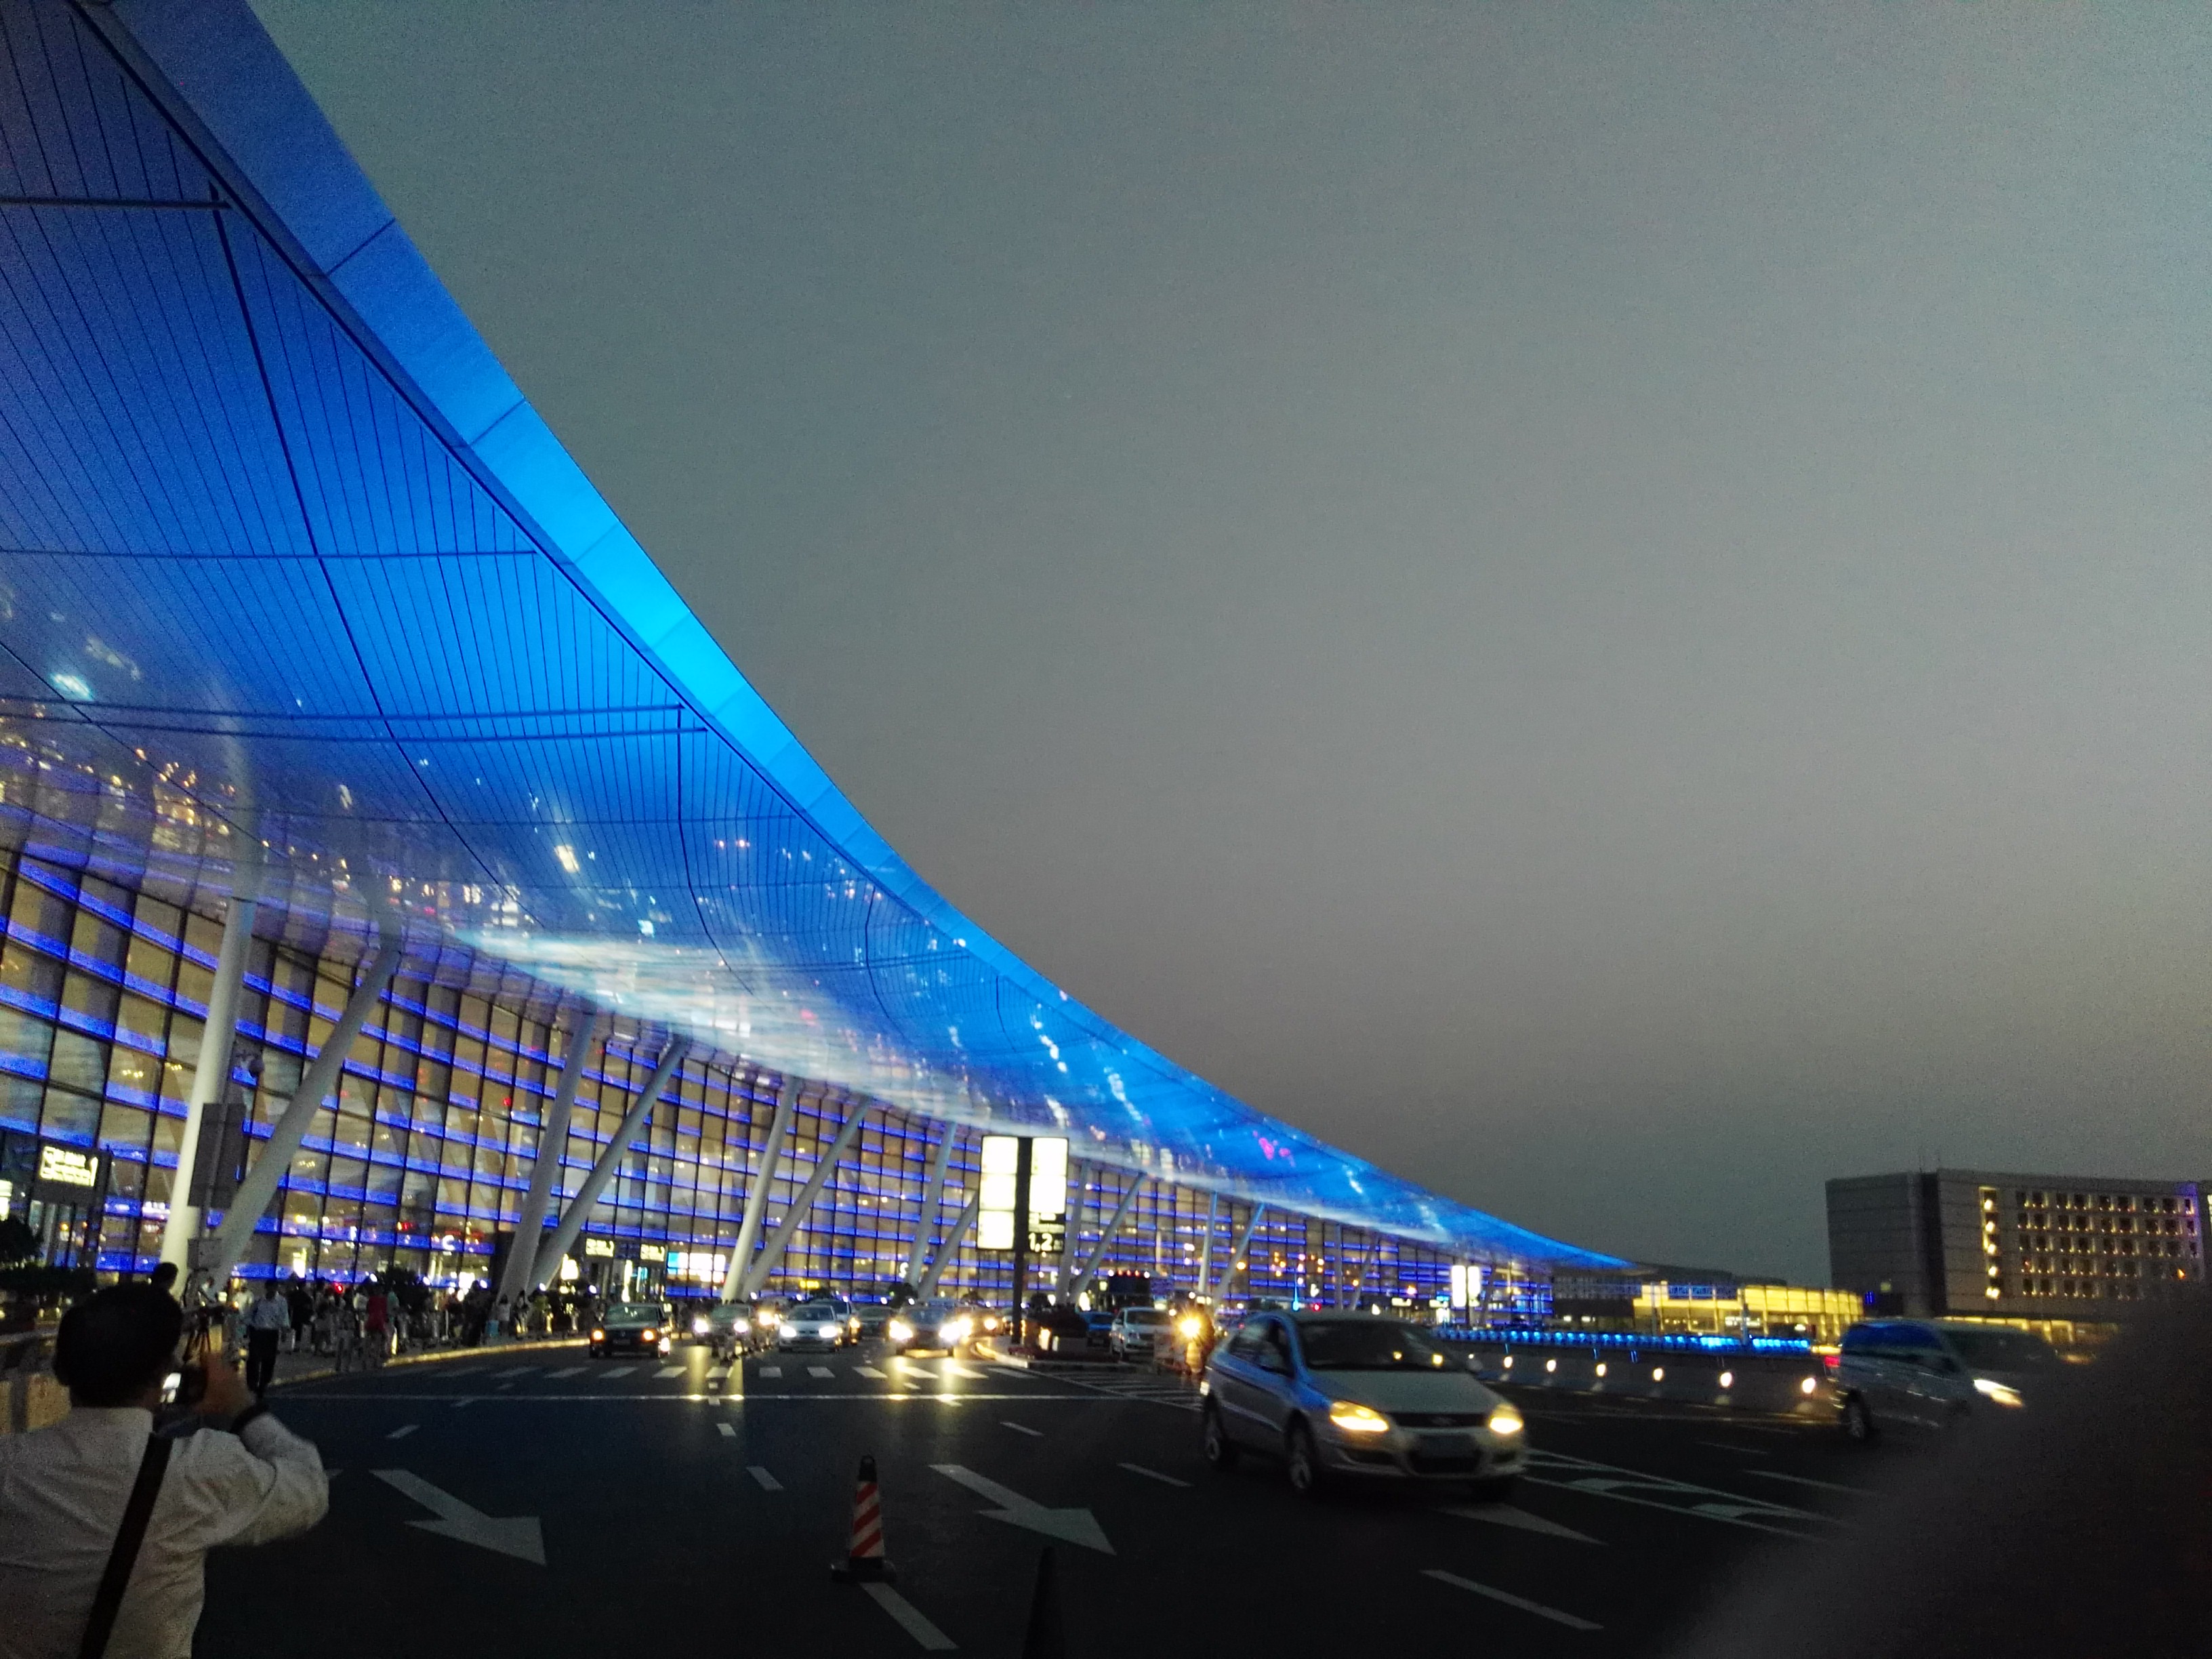 禄口机场夜景照明绚丽多彩